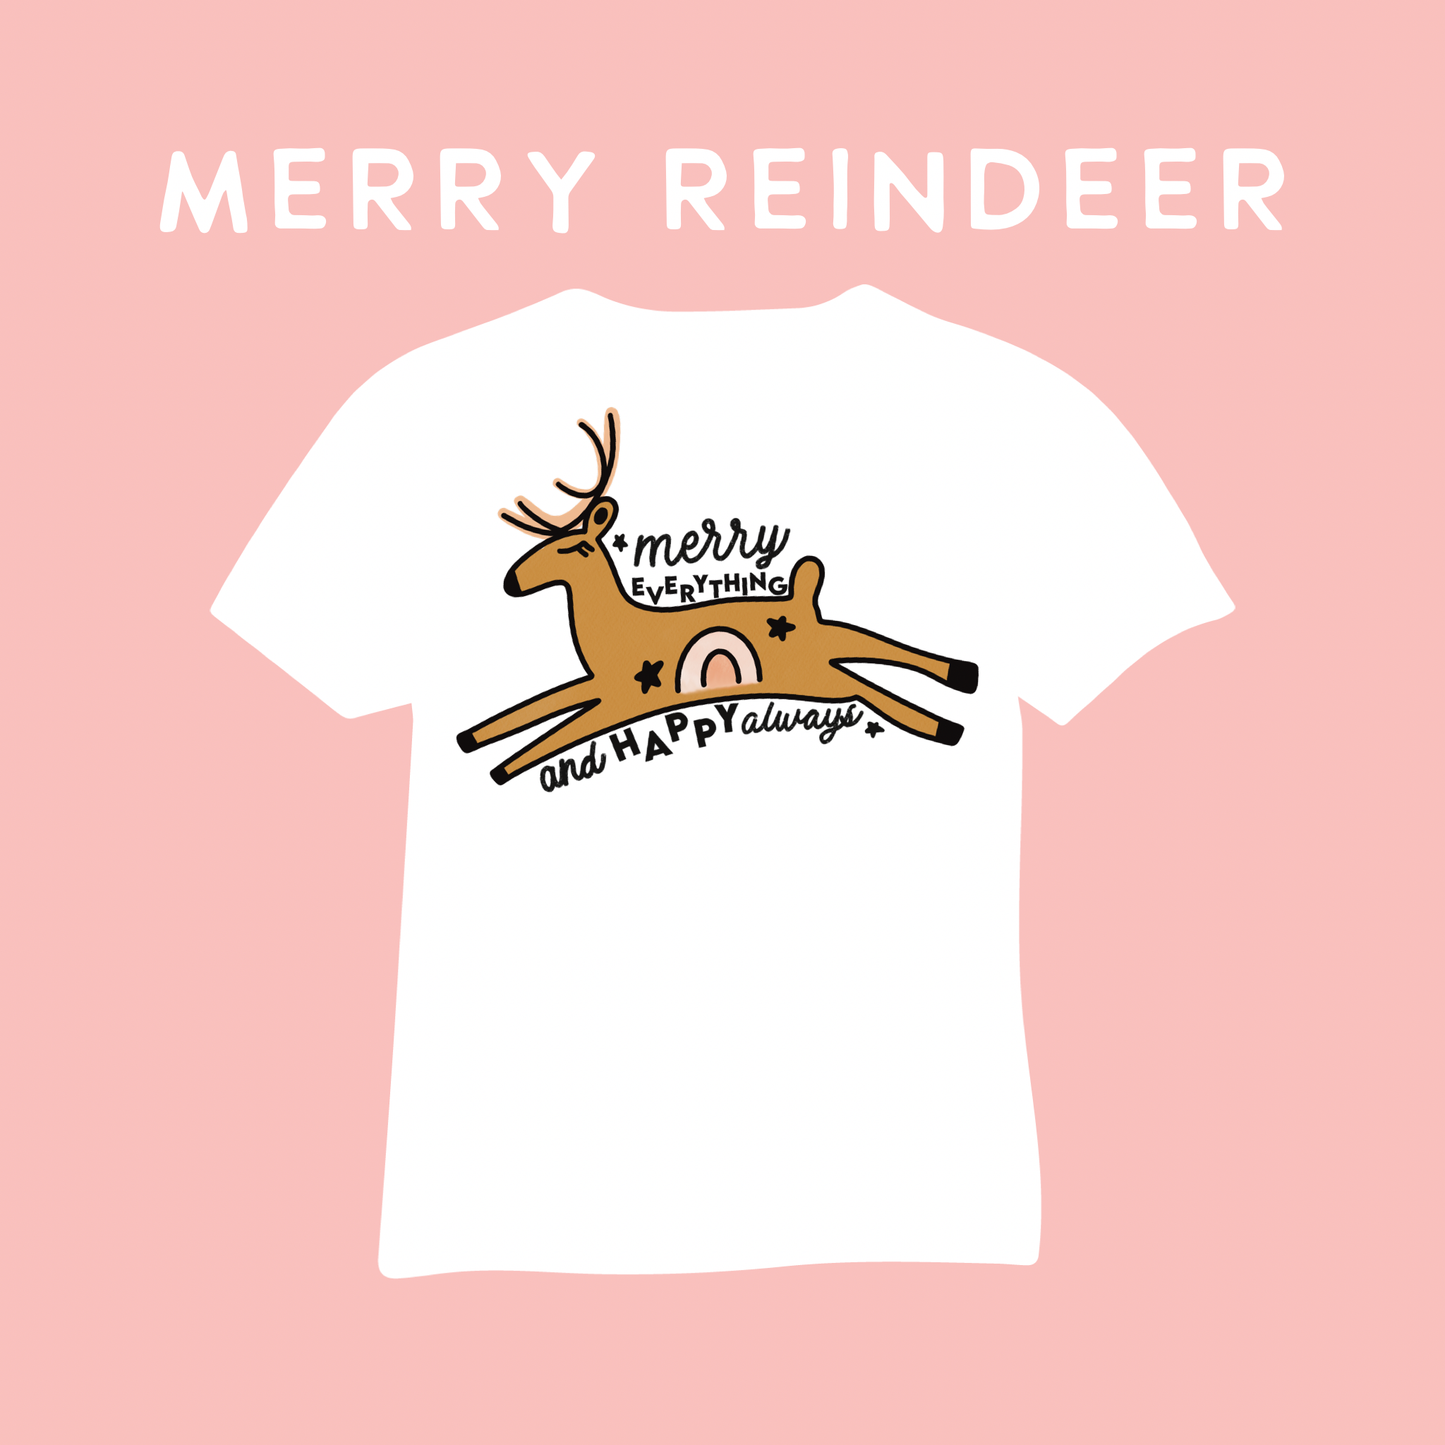 Merry reindeer